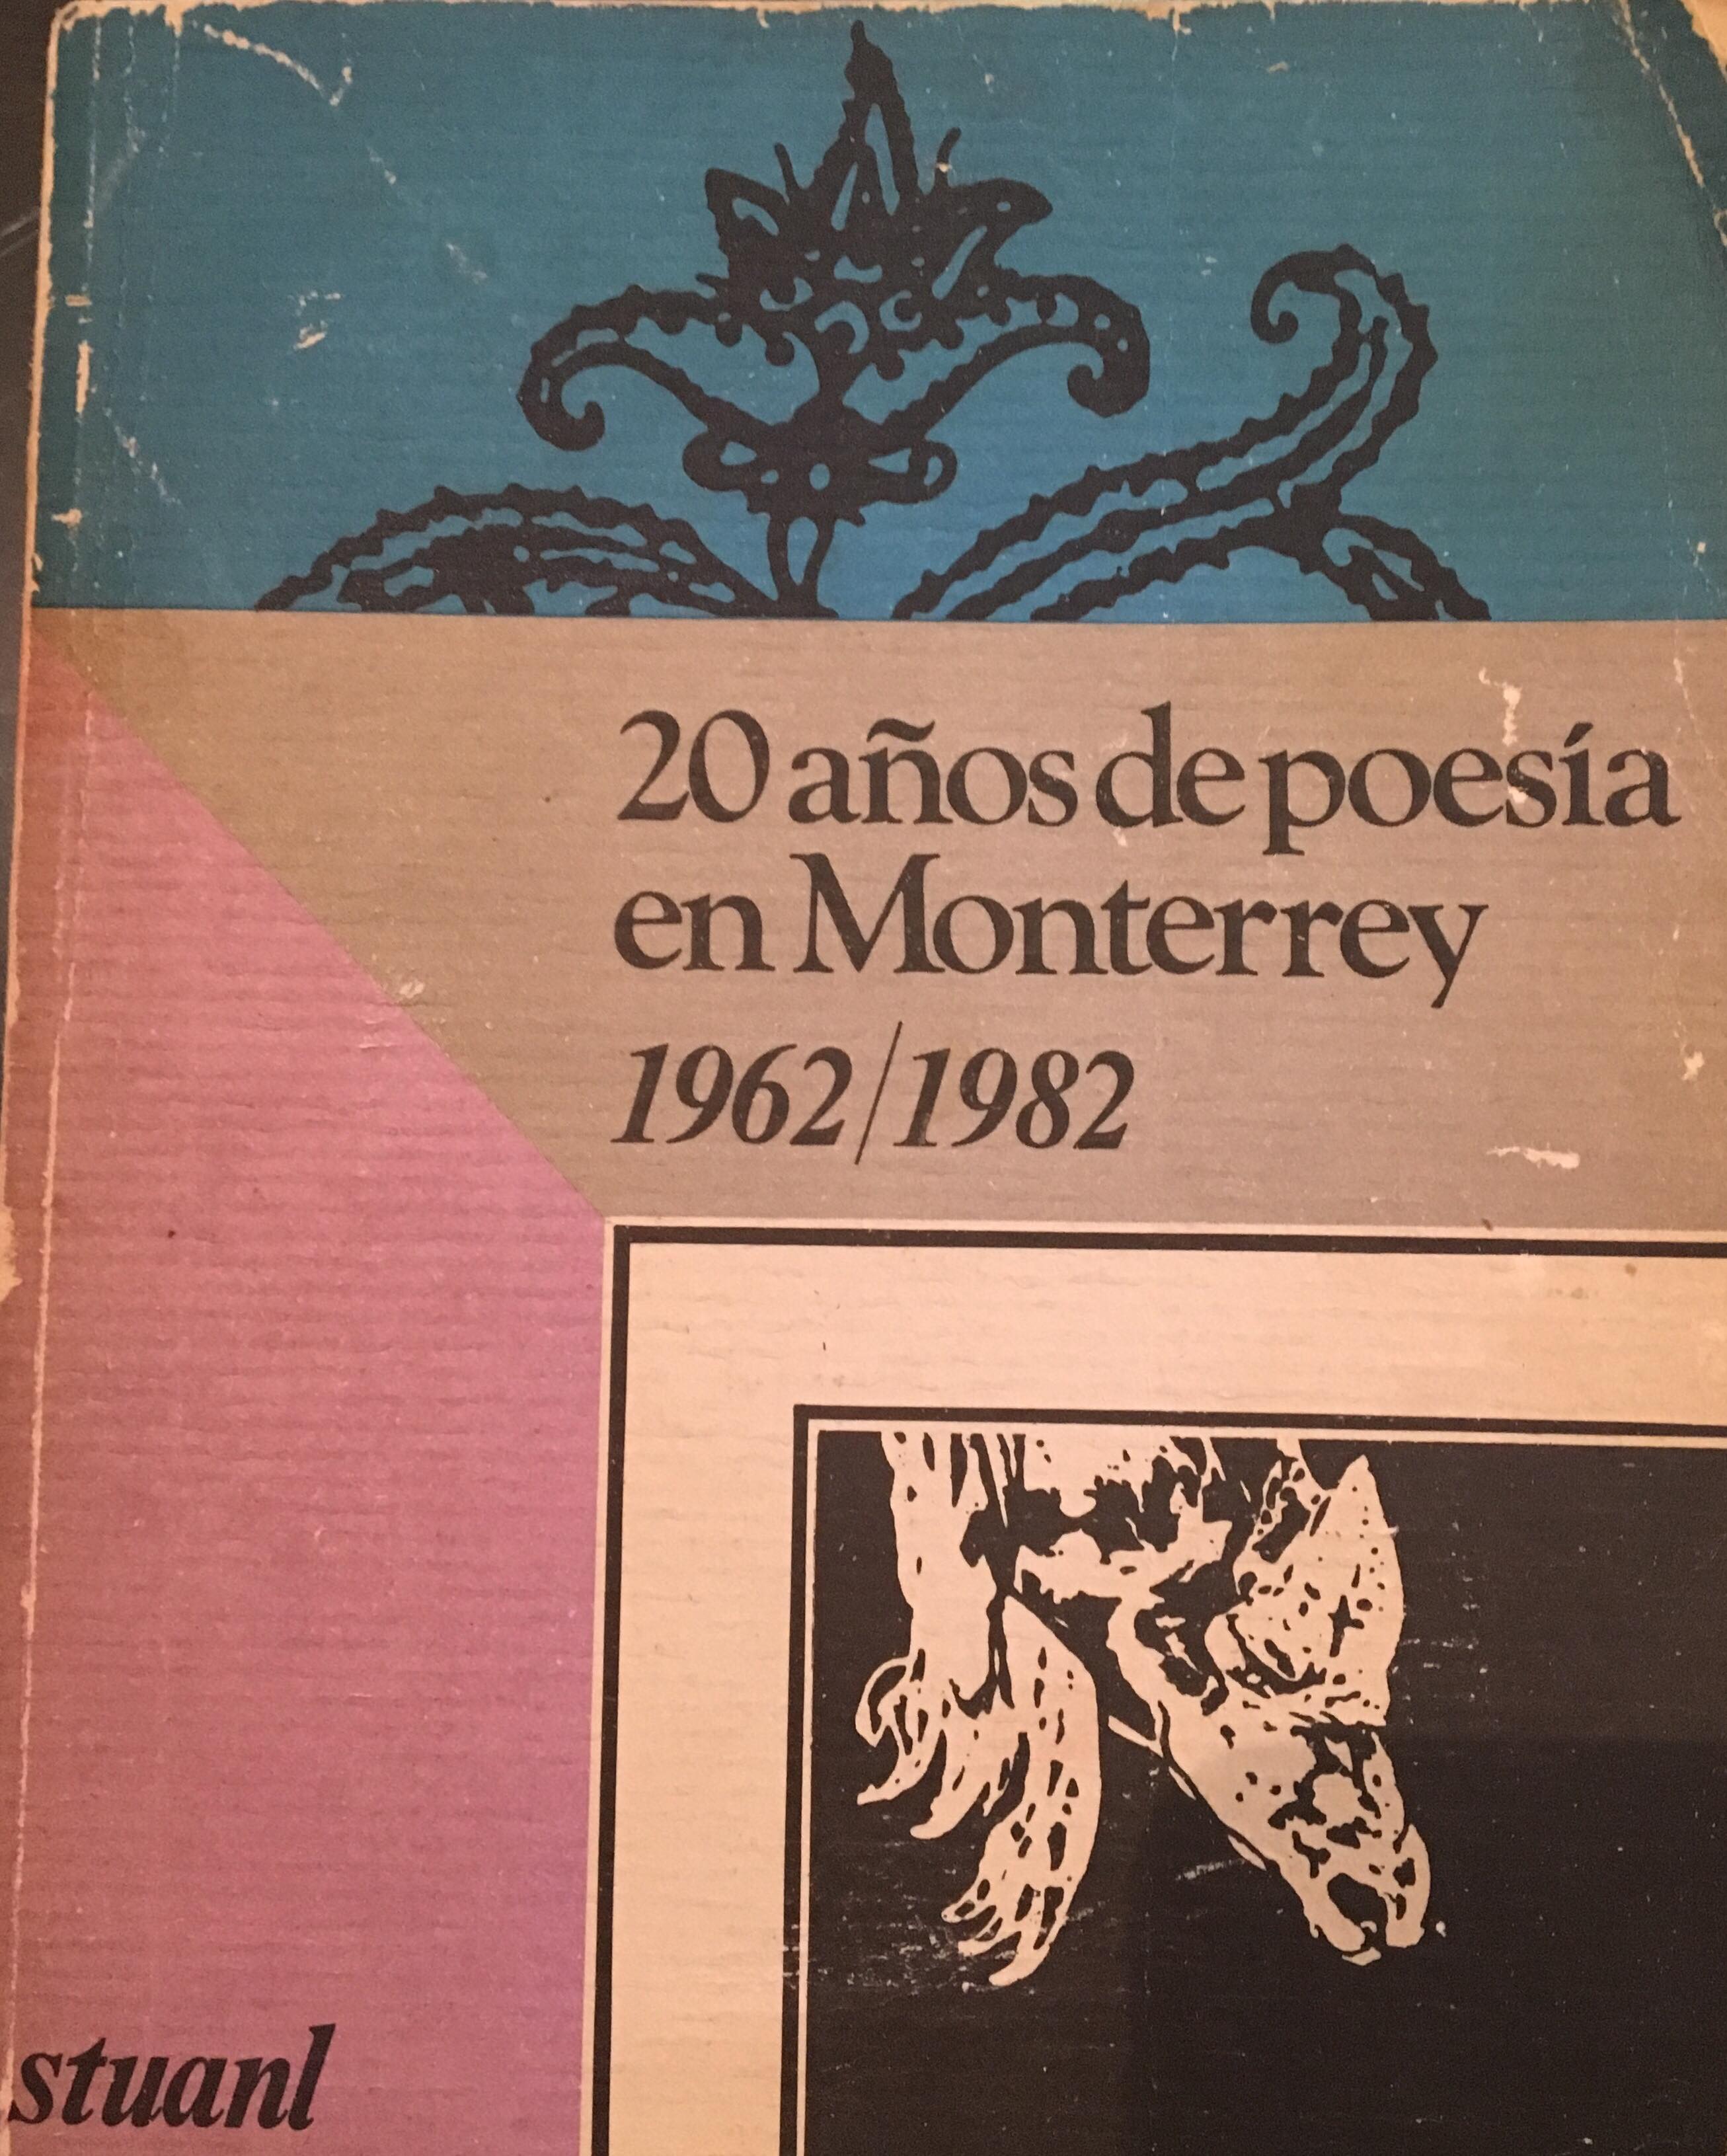 20 años de poesia en monterrey